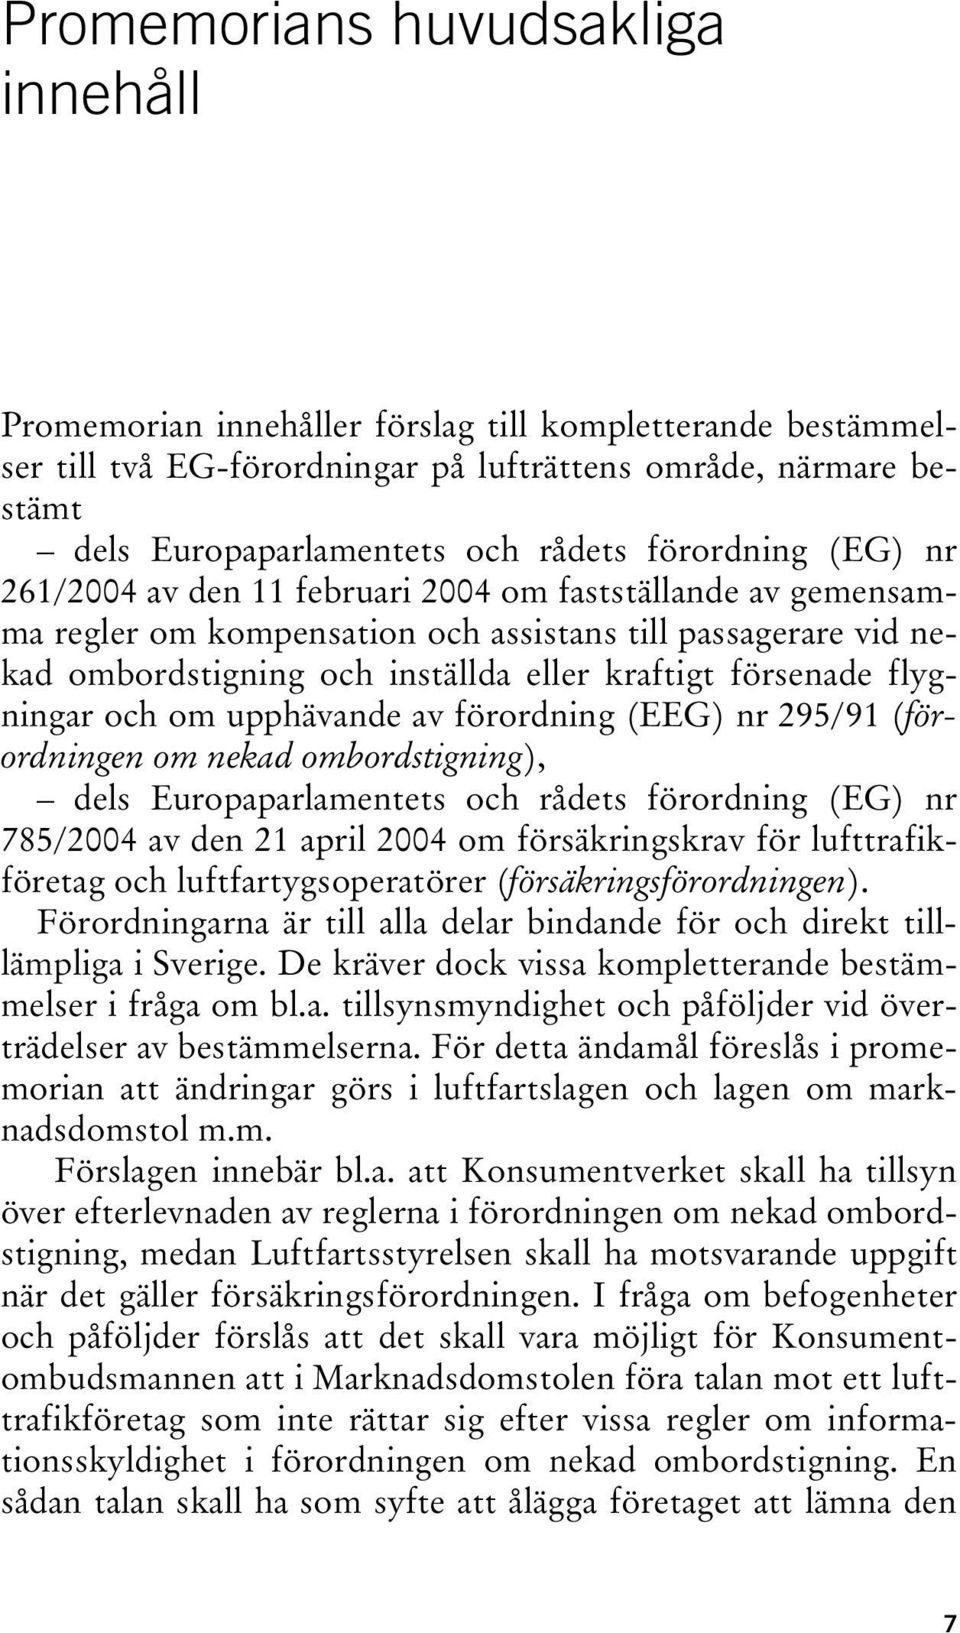 försenade flygningar och om upphävande av förordning (EEG) nr 295/91 (förordningen om nekad ombordstigning), dels Europaparlamentets och rådets förordning (EG) nr 785/2004 av den 21 april 2004 om